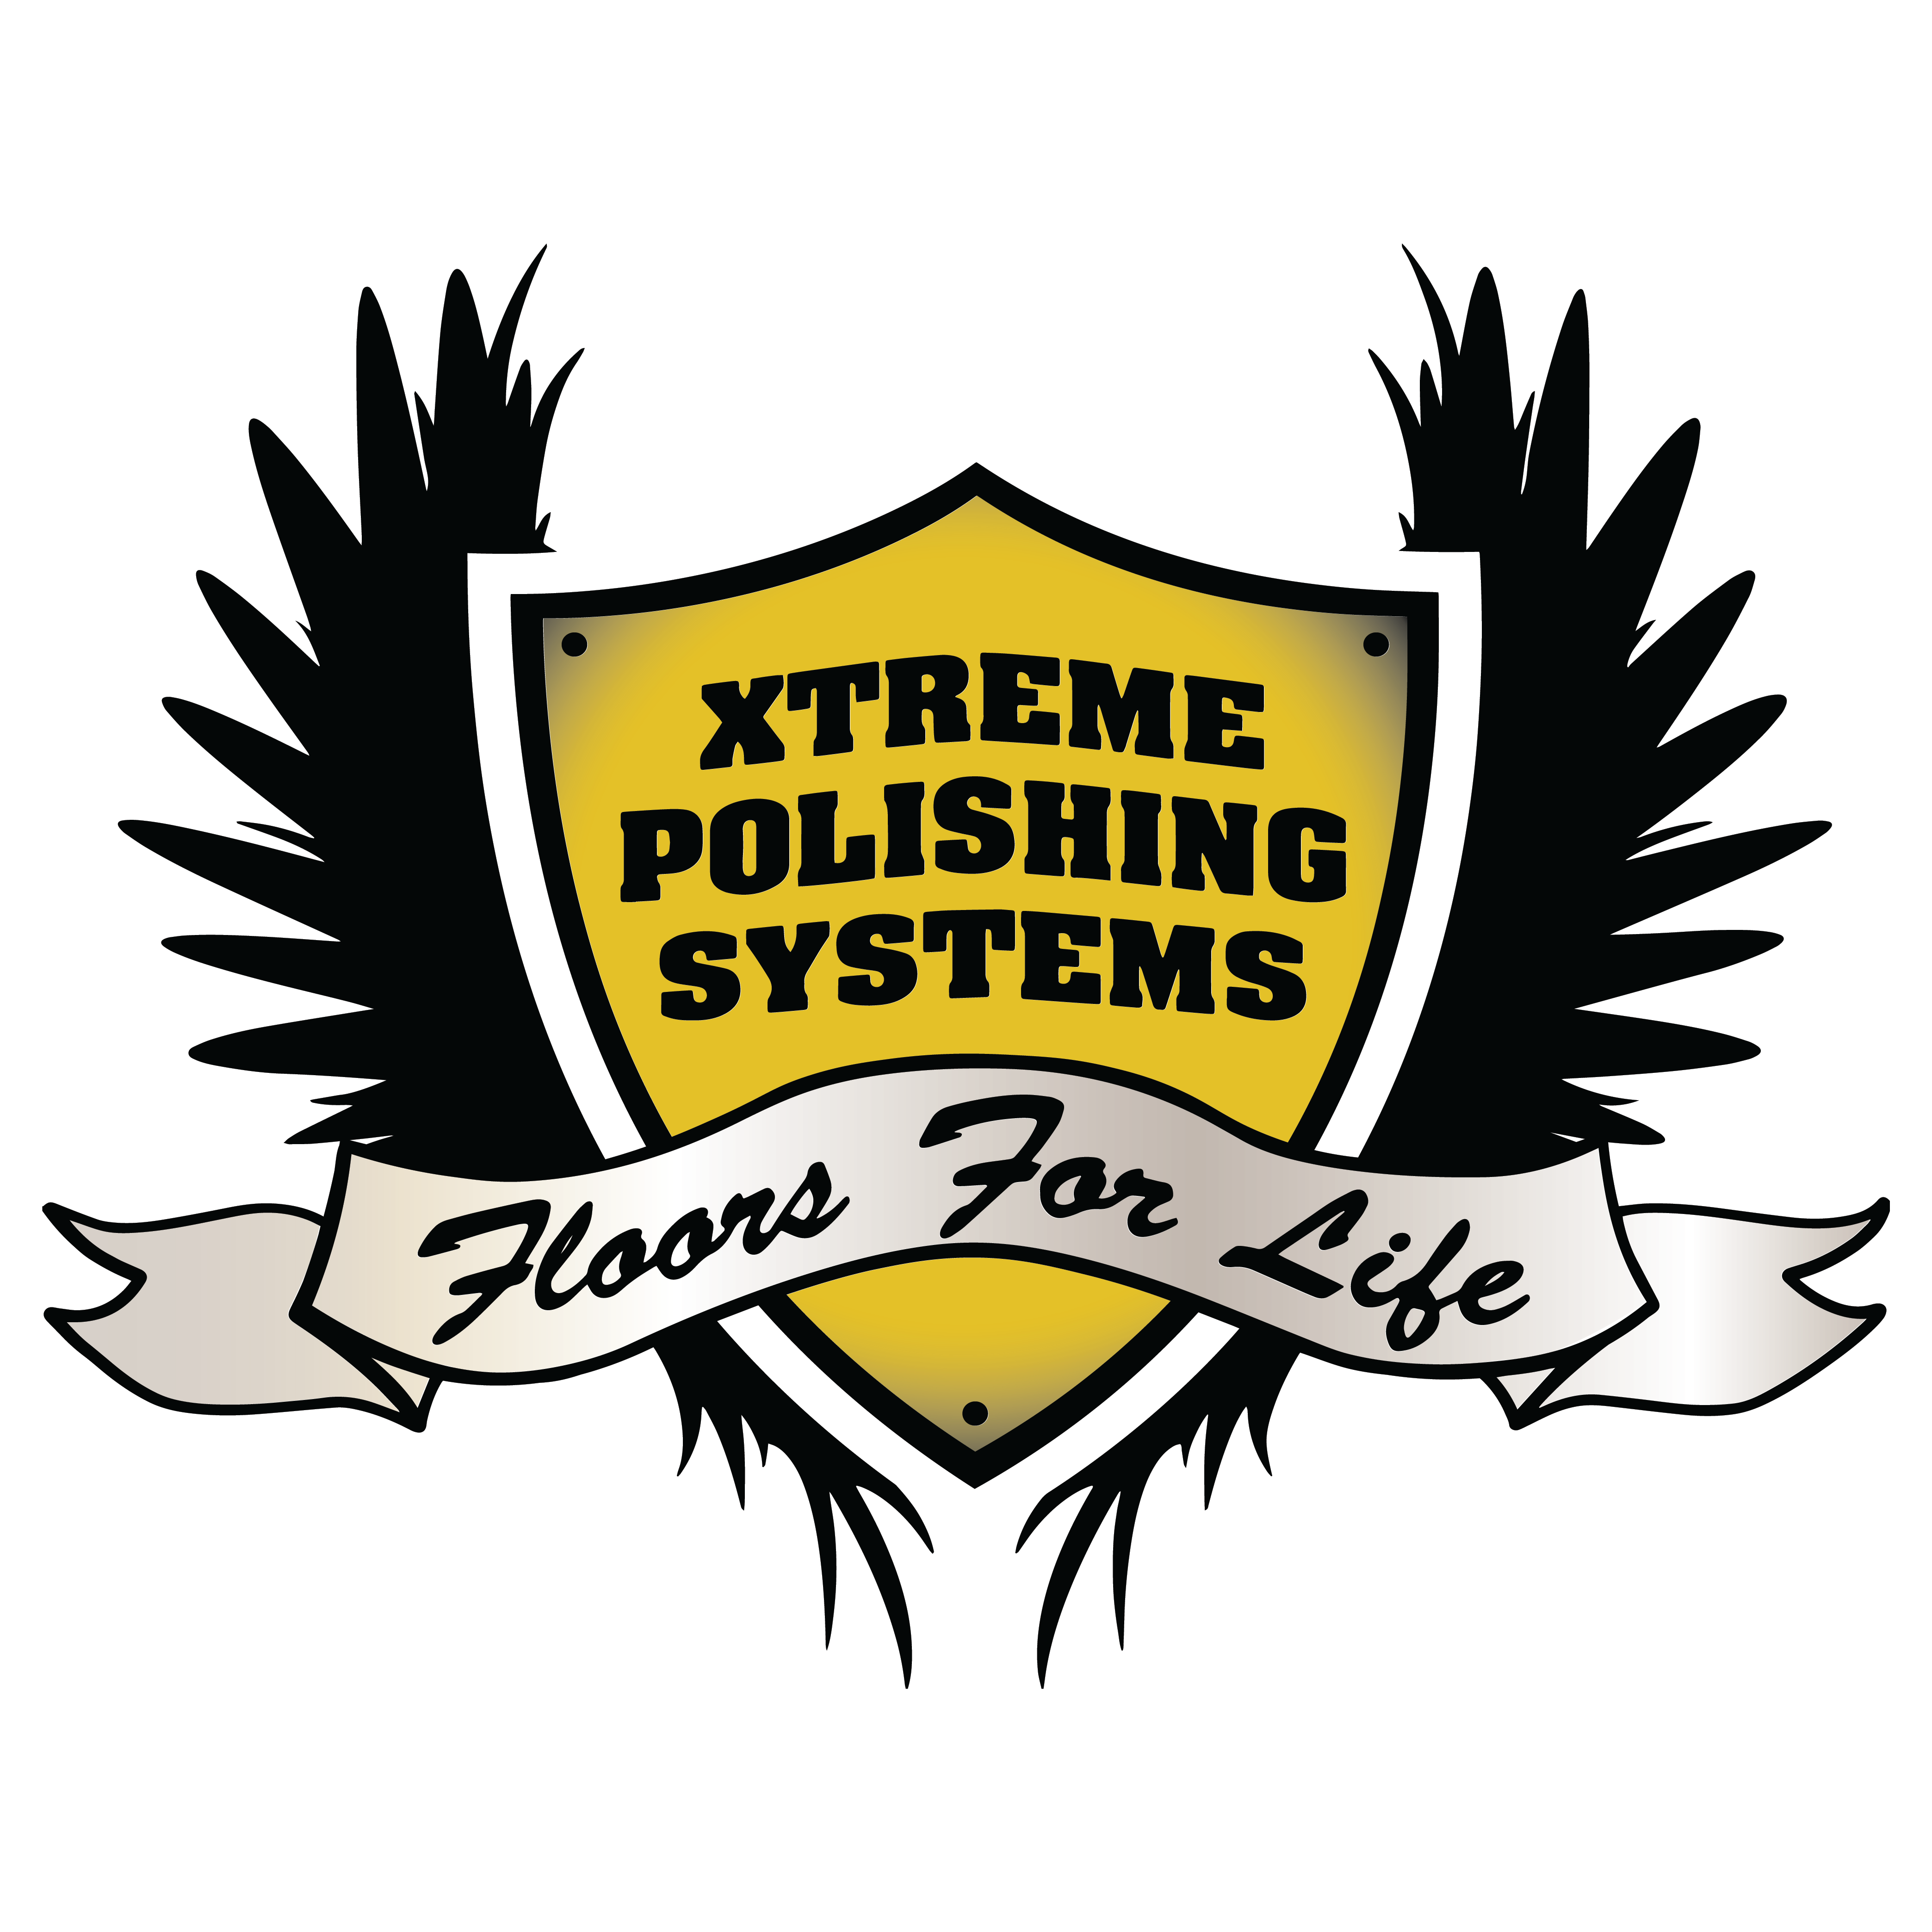 Xtreme Polishing Systems Photo